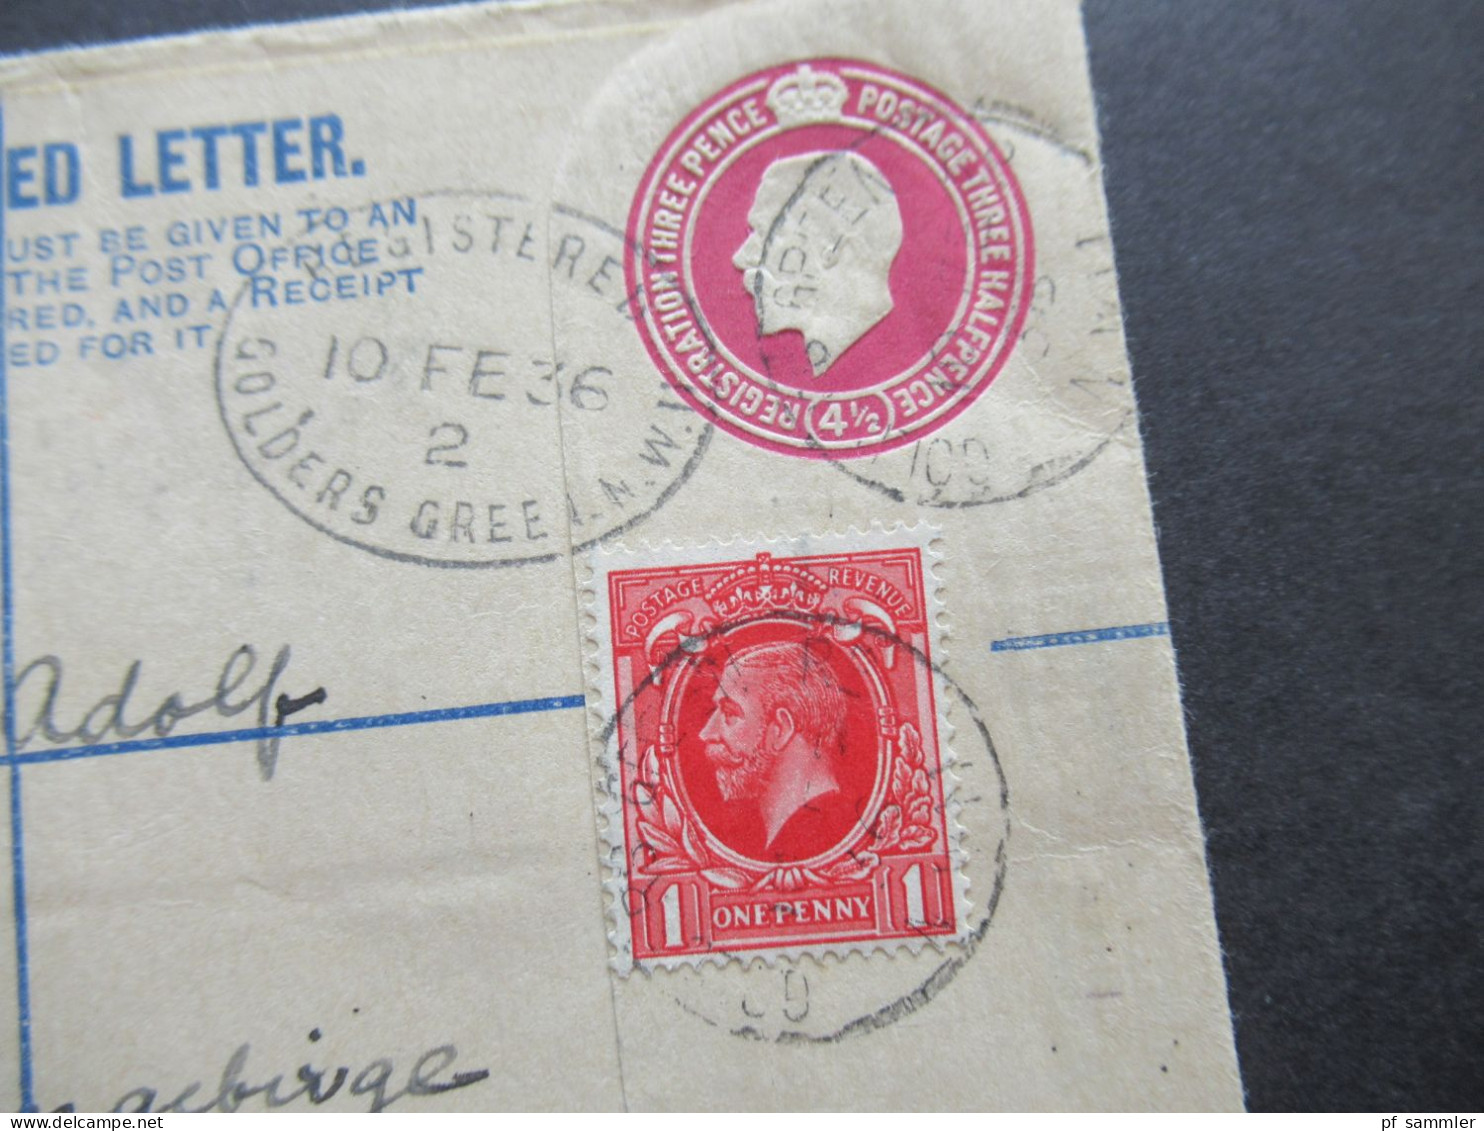 GB 1936 GA Umschlag Registered Letter / Registered Golders Green 5 Nach Petzer Riesengebrge CSR Mit Ank. Stempel - Brieven En Documenten